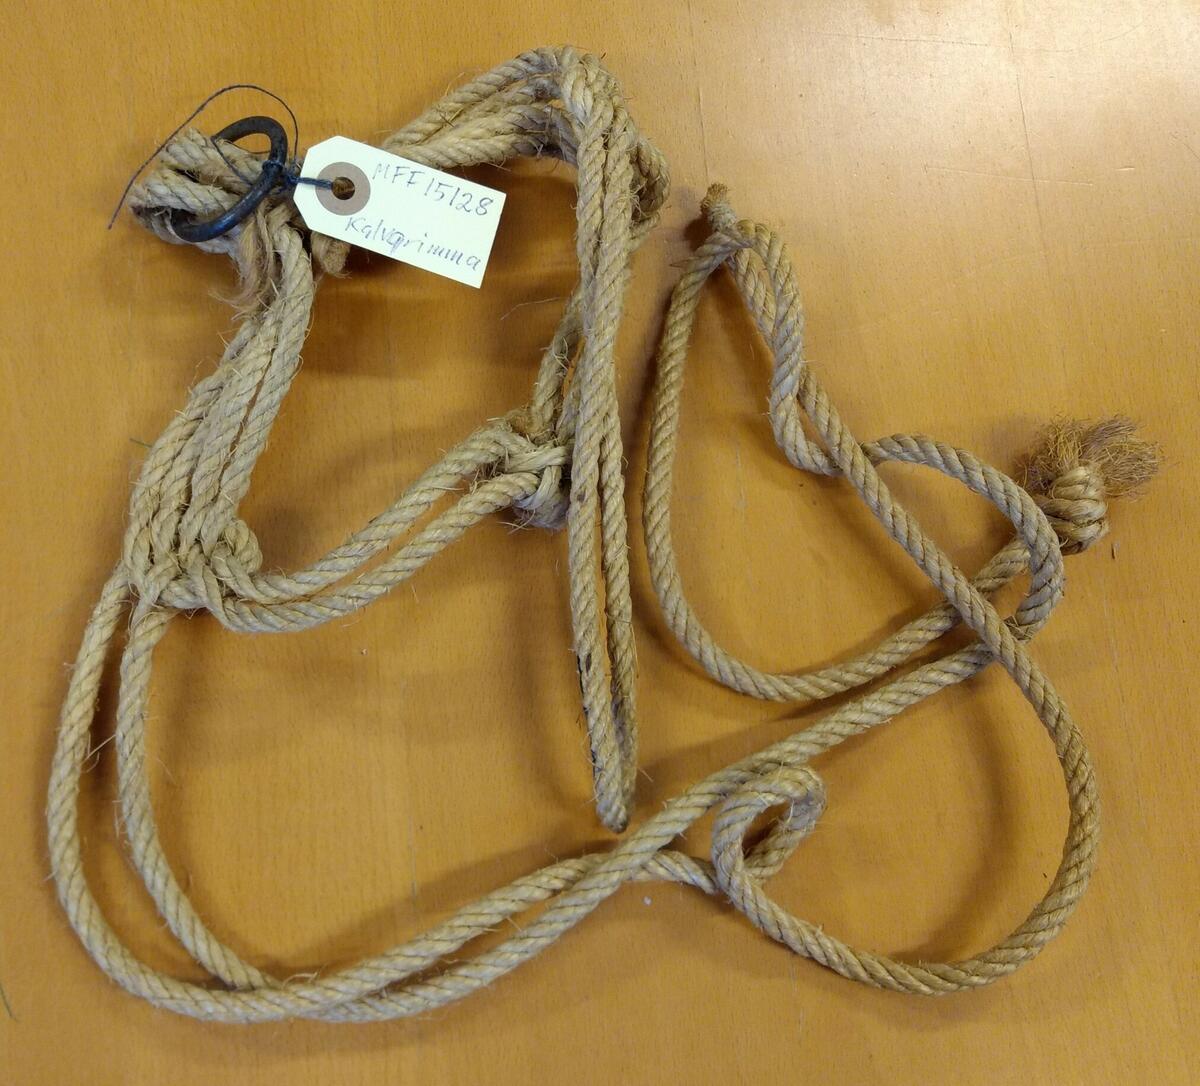 Kalvgrimma av jute. Övre delen består av dubbla rep. Underdelen består av 4-dubbla rep. Stålring under hakan. Två rep att knyta runt nacken. Givare: Harry Sjöström.